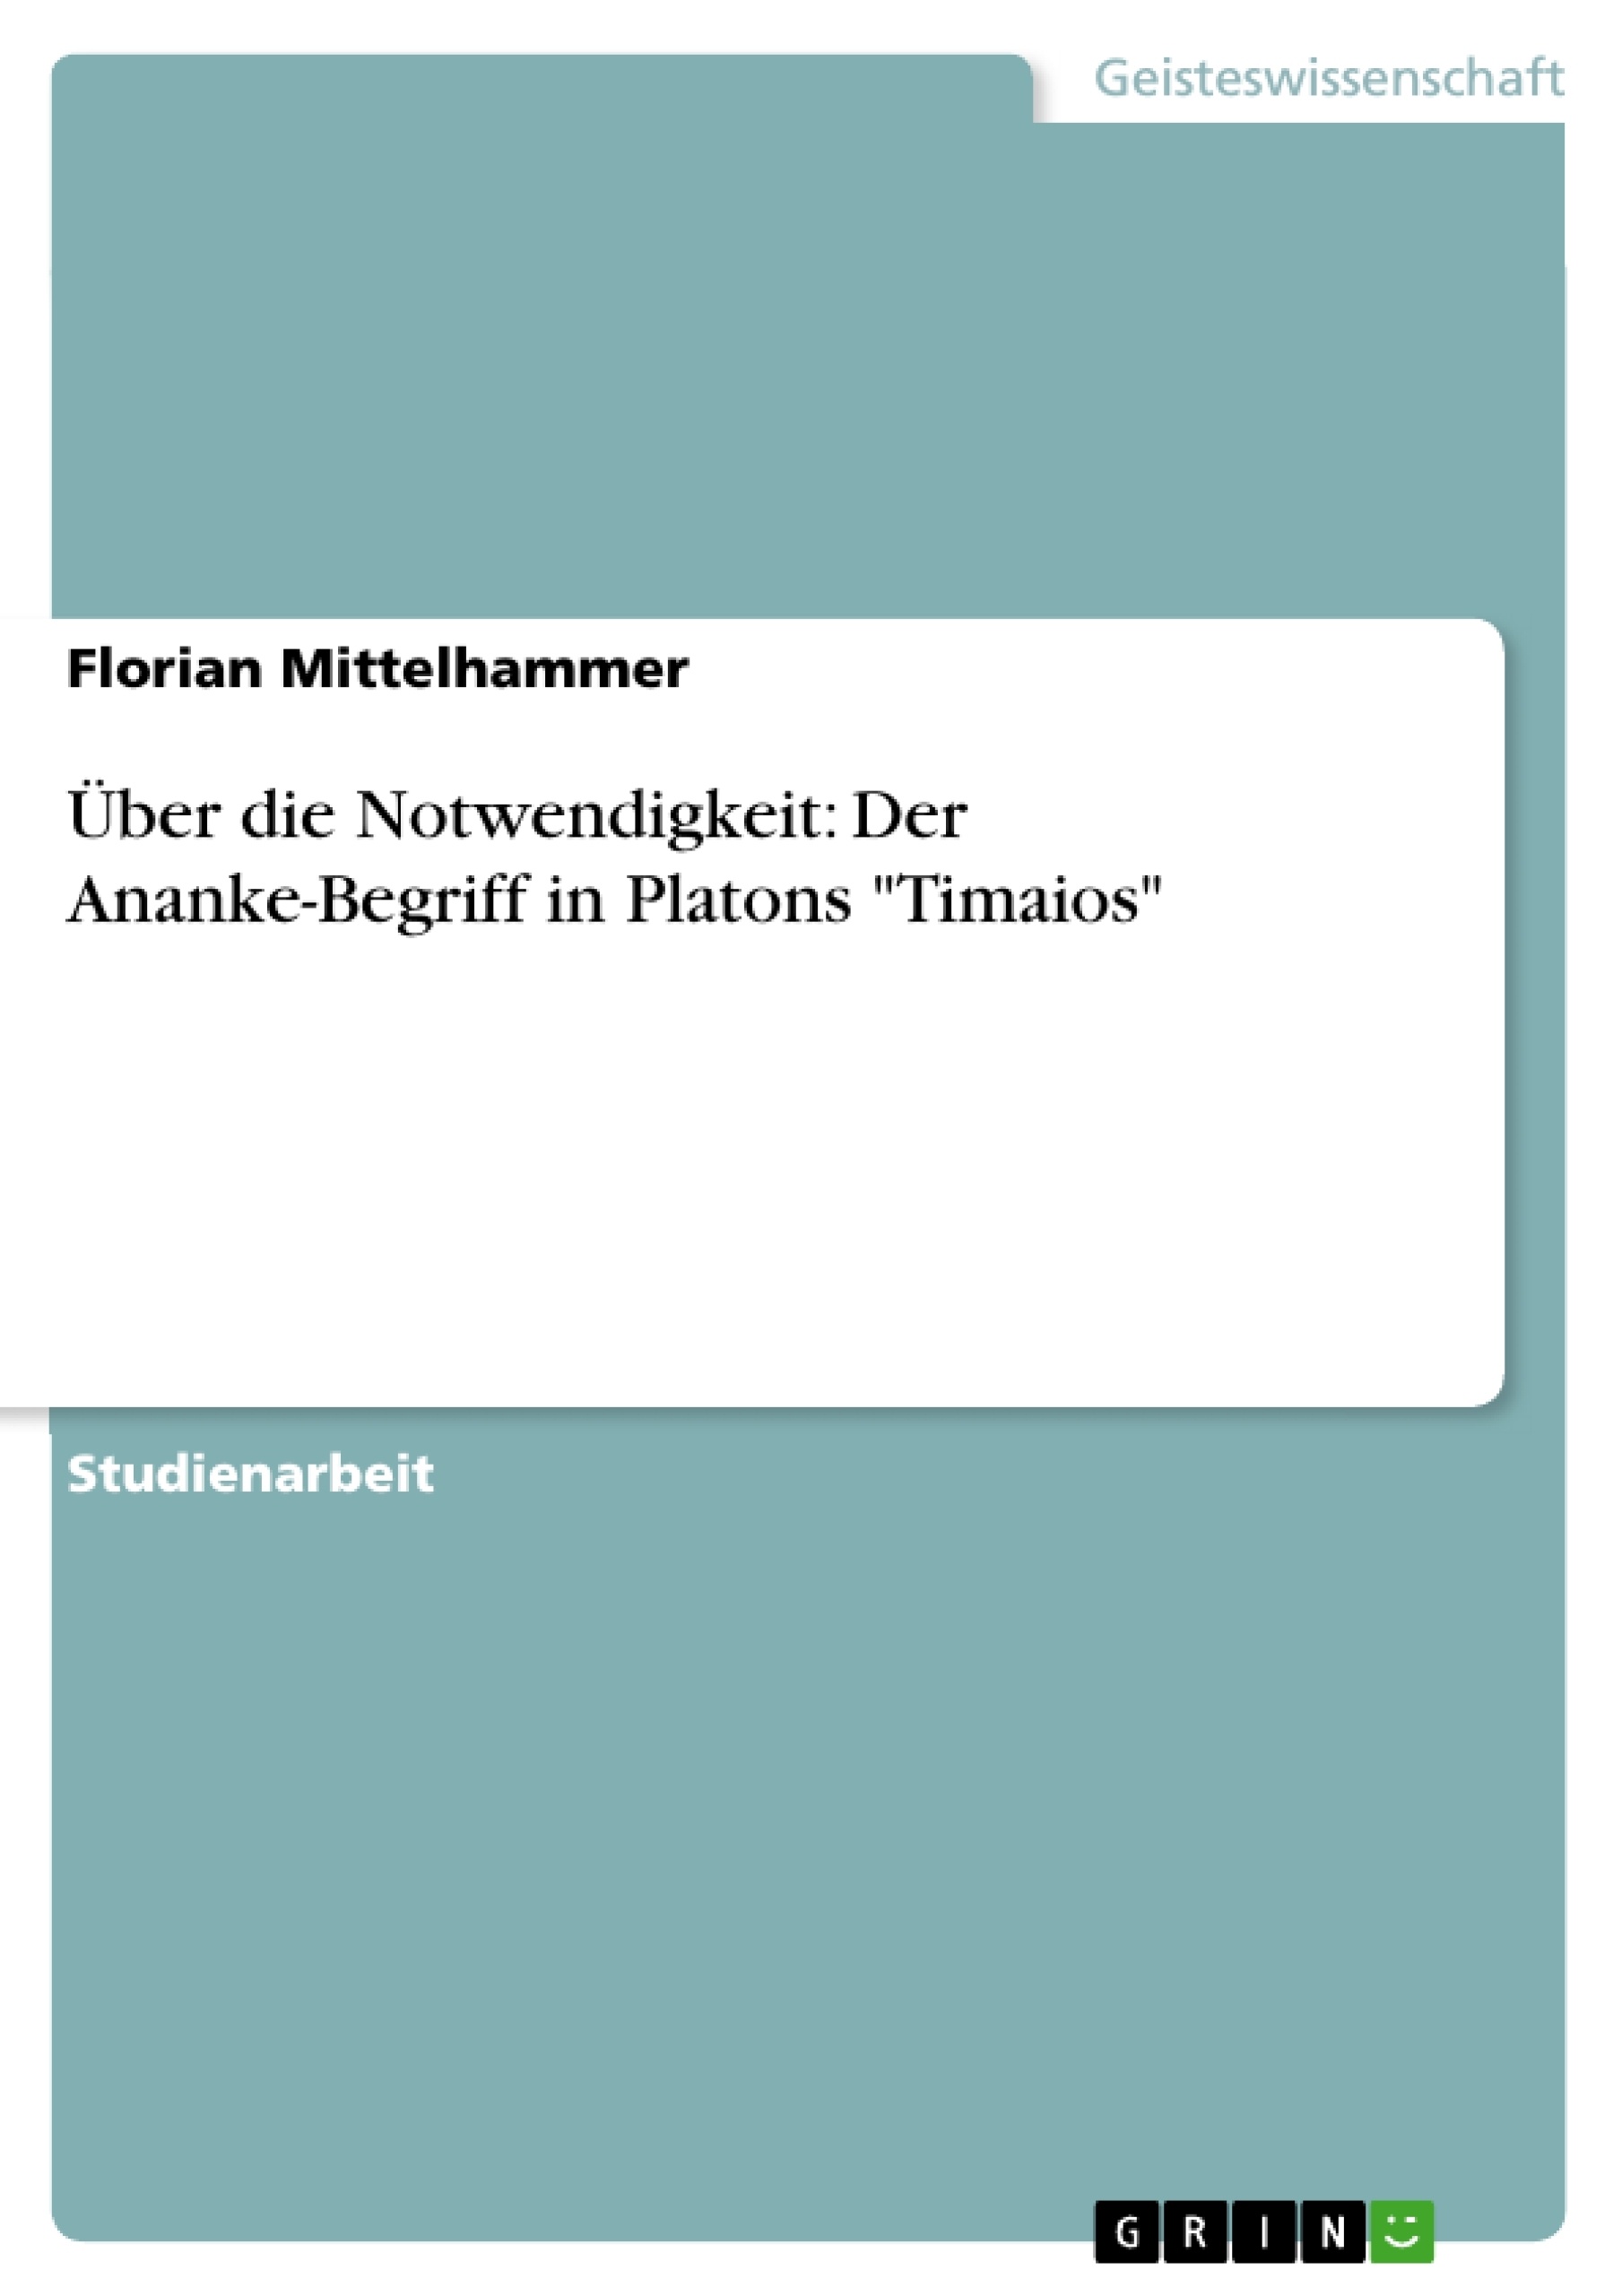 Titel: Über die Notwendigkeit: Der Ananke-Begriff  in Platons "Timaios"